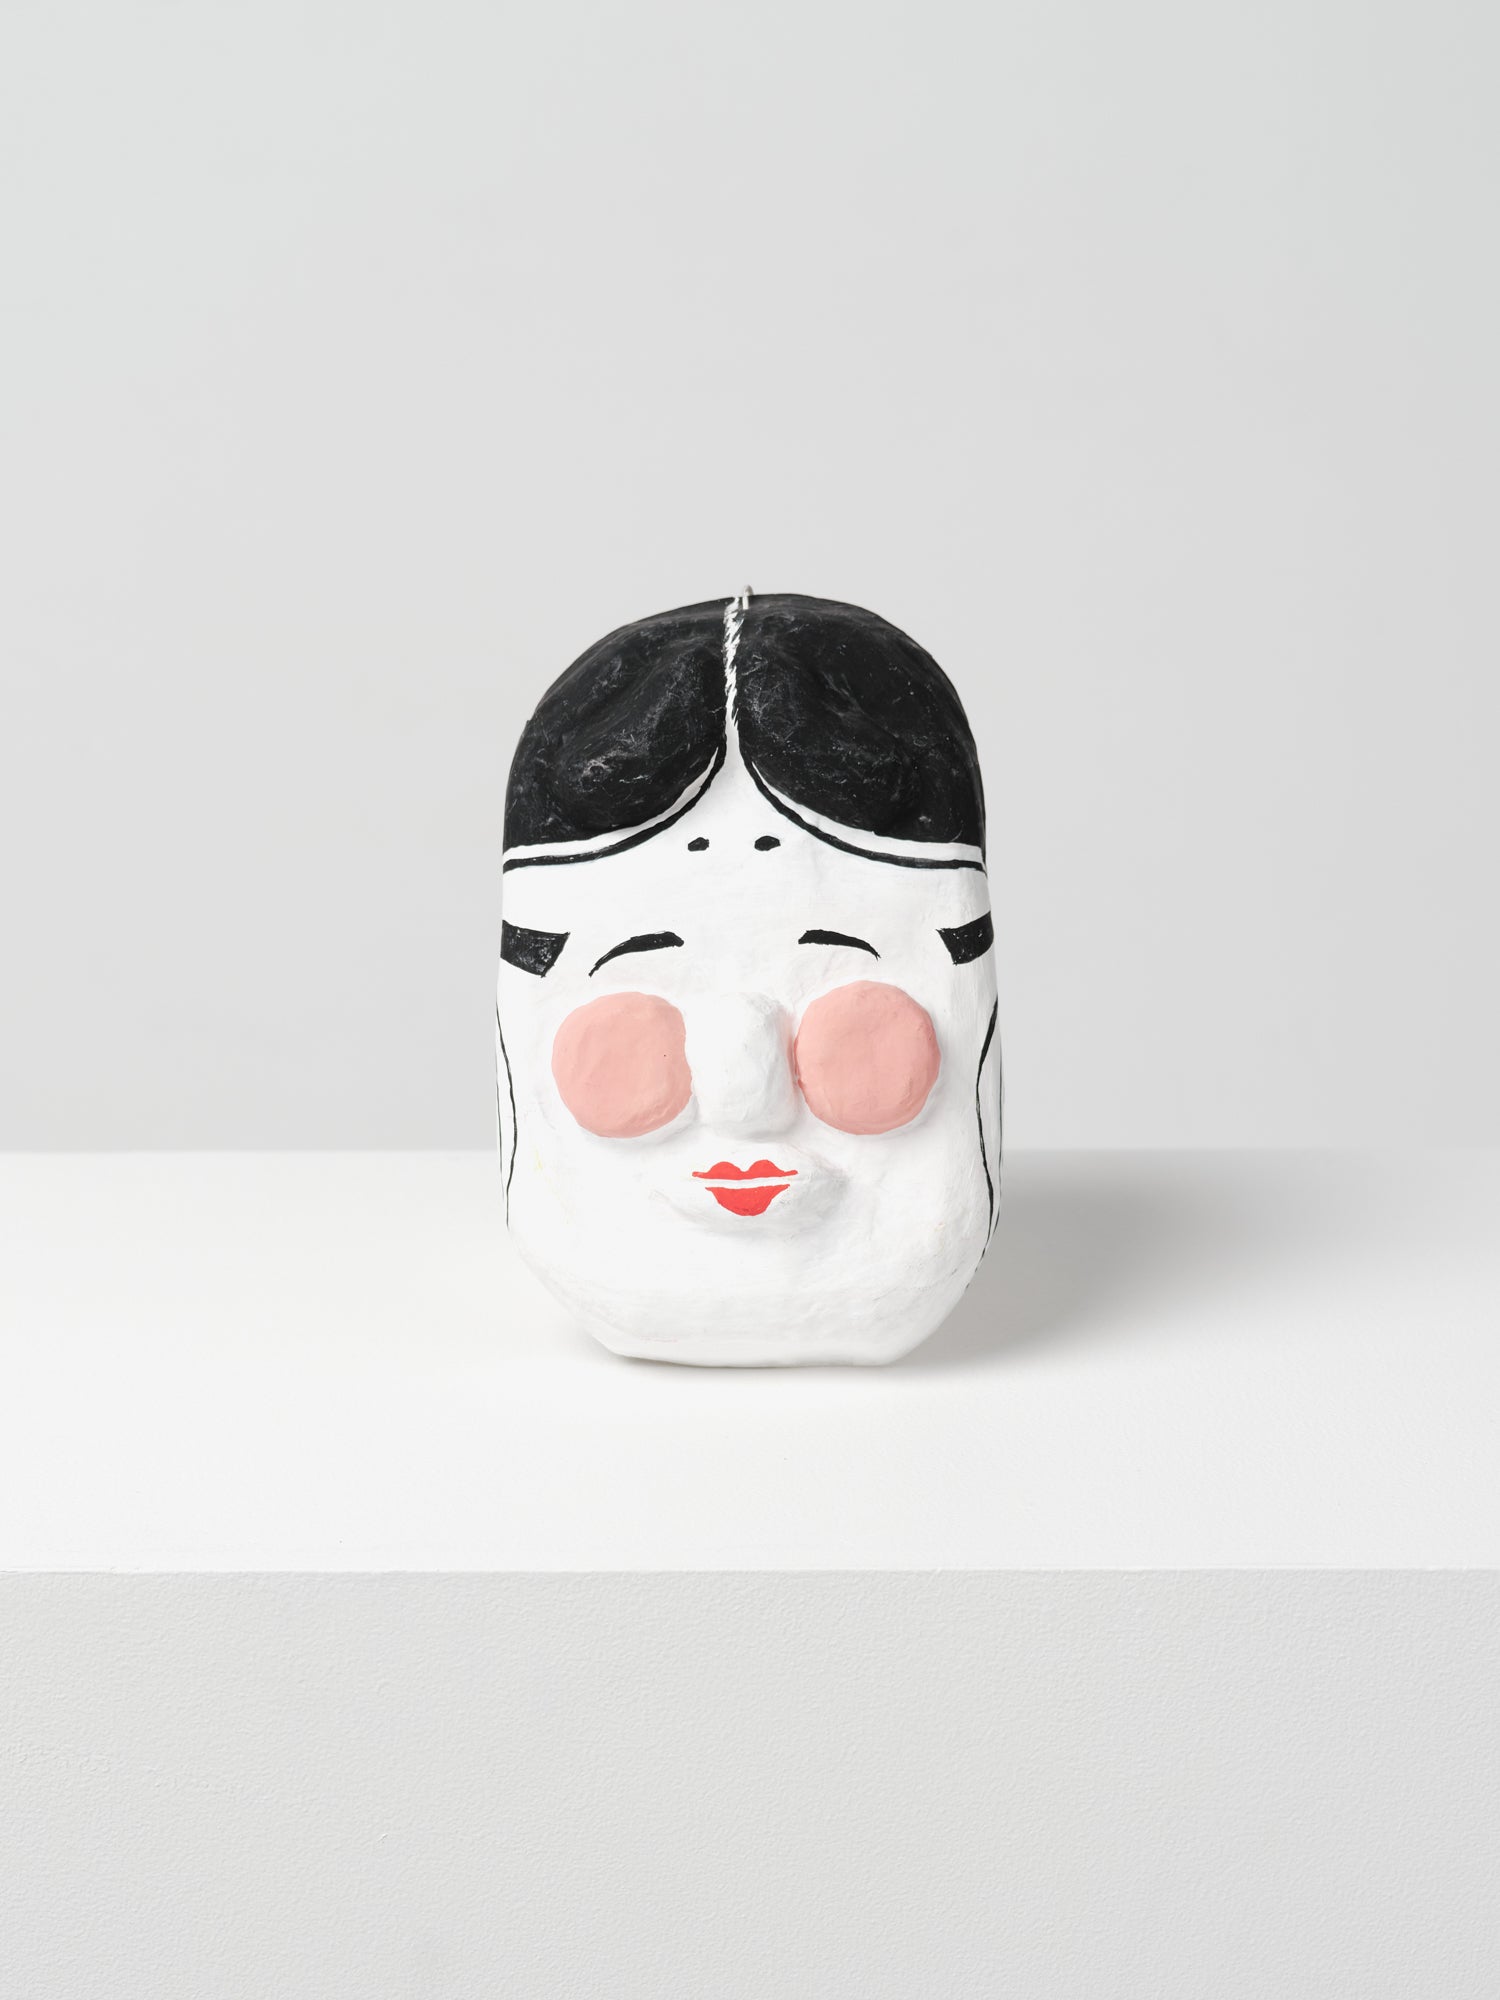 Hariko (papier-maché) masks made by Furukawa in Kyoto